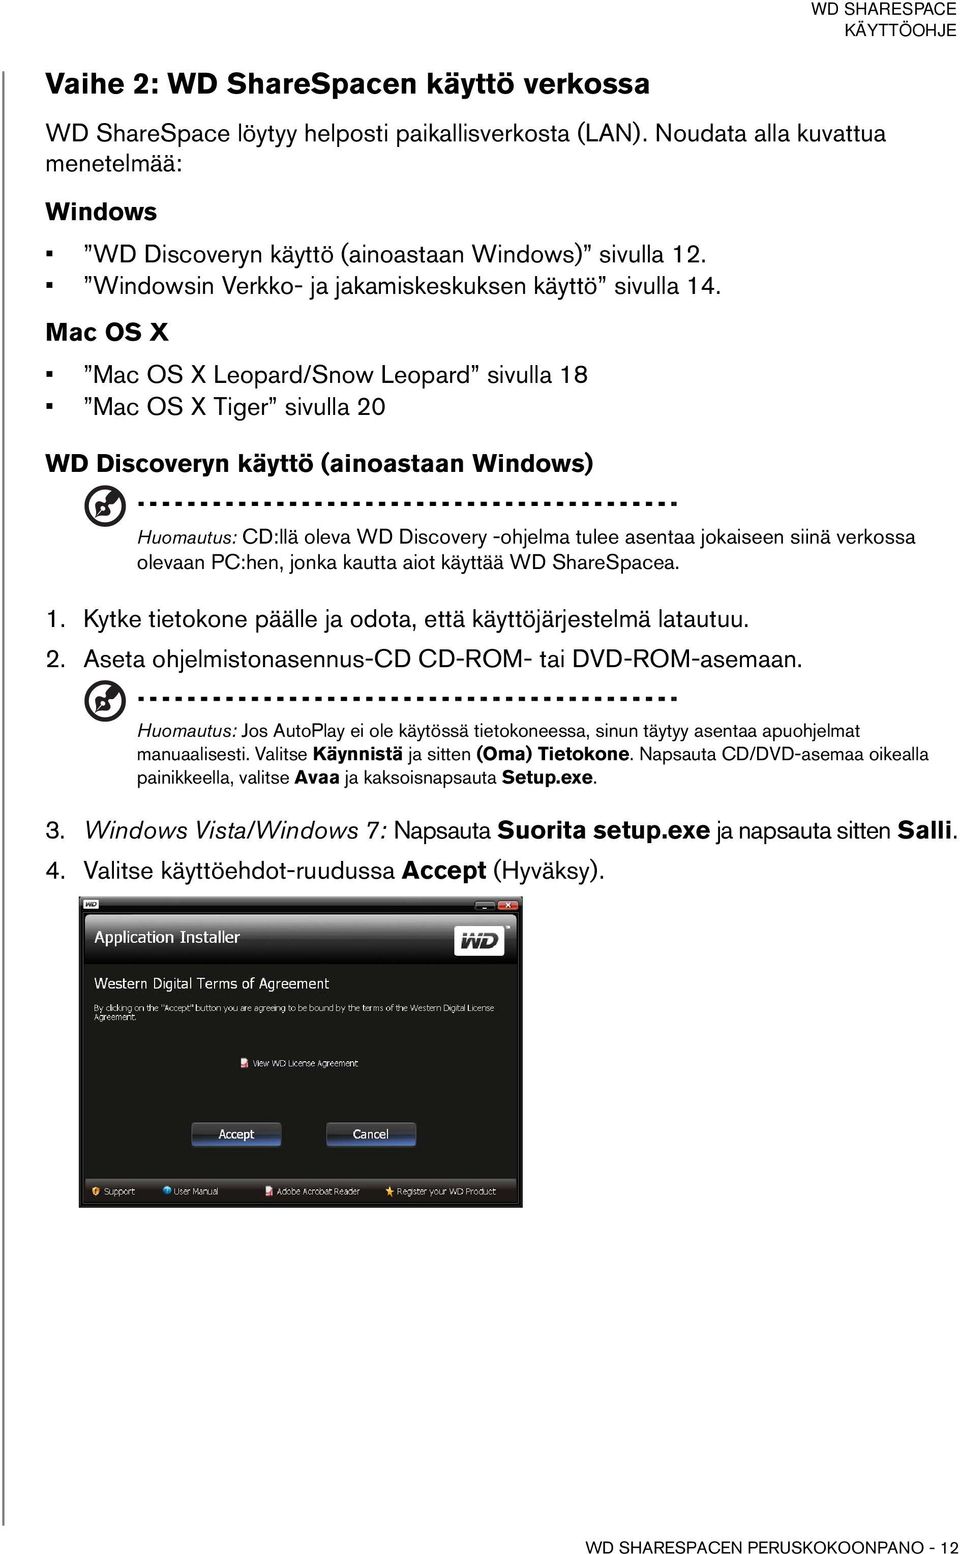 Mac OS X Mac OS X Leopard/Snow Leopard sivulla 18 Mac OS X Tiger sivulla 20 WD Discoveryn käyttö (ainoastaan Windows) Huomautus: CD:llä oleva WD Discovery -ohjelma tulee asentaa jokaiseen siinä